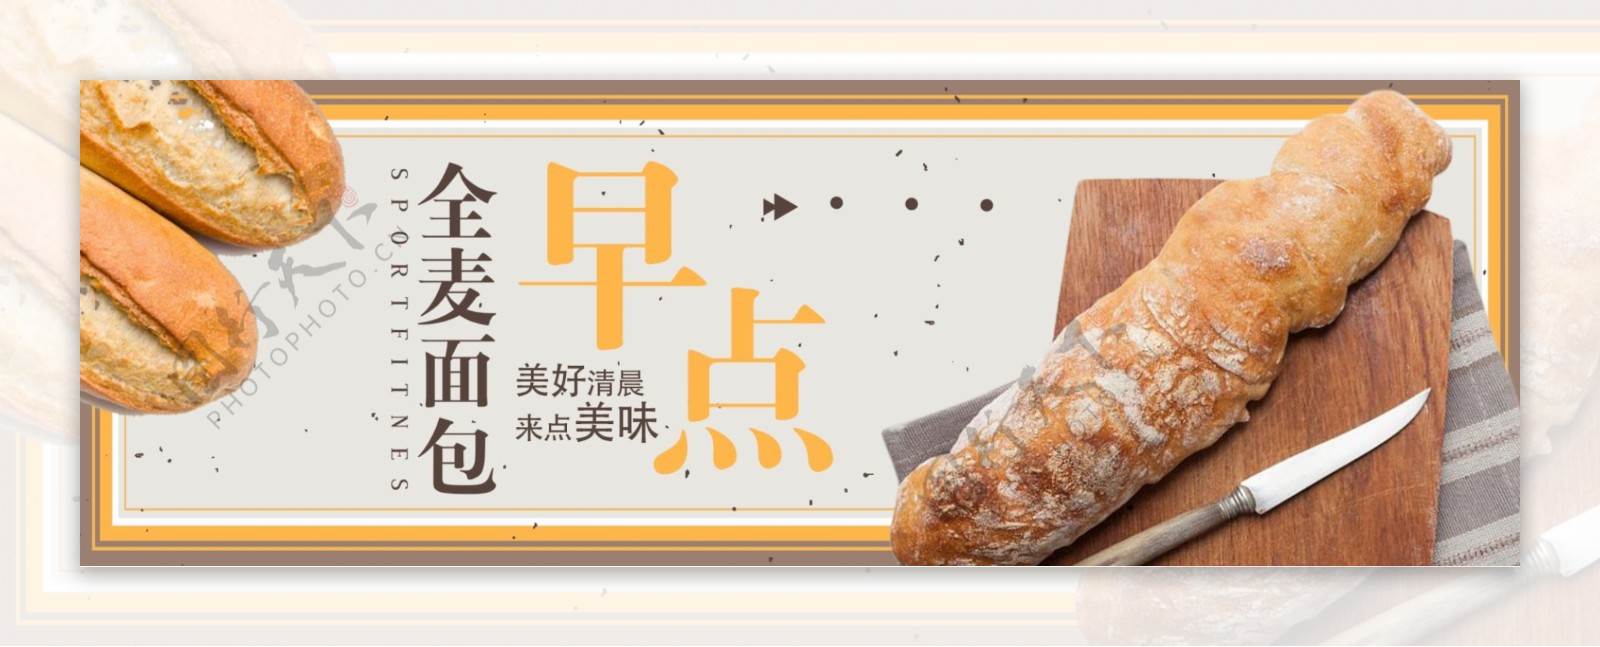 电商淘宝夏季夏日美食糕点面包促销海报